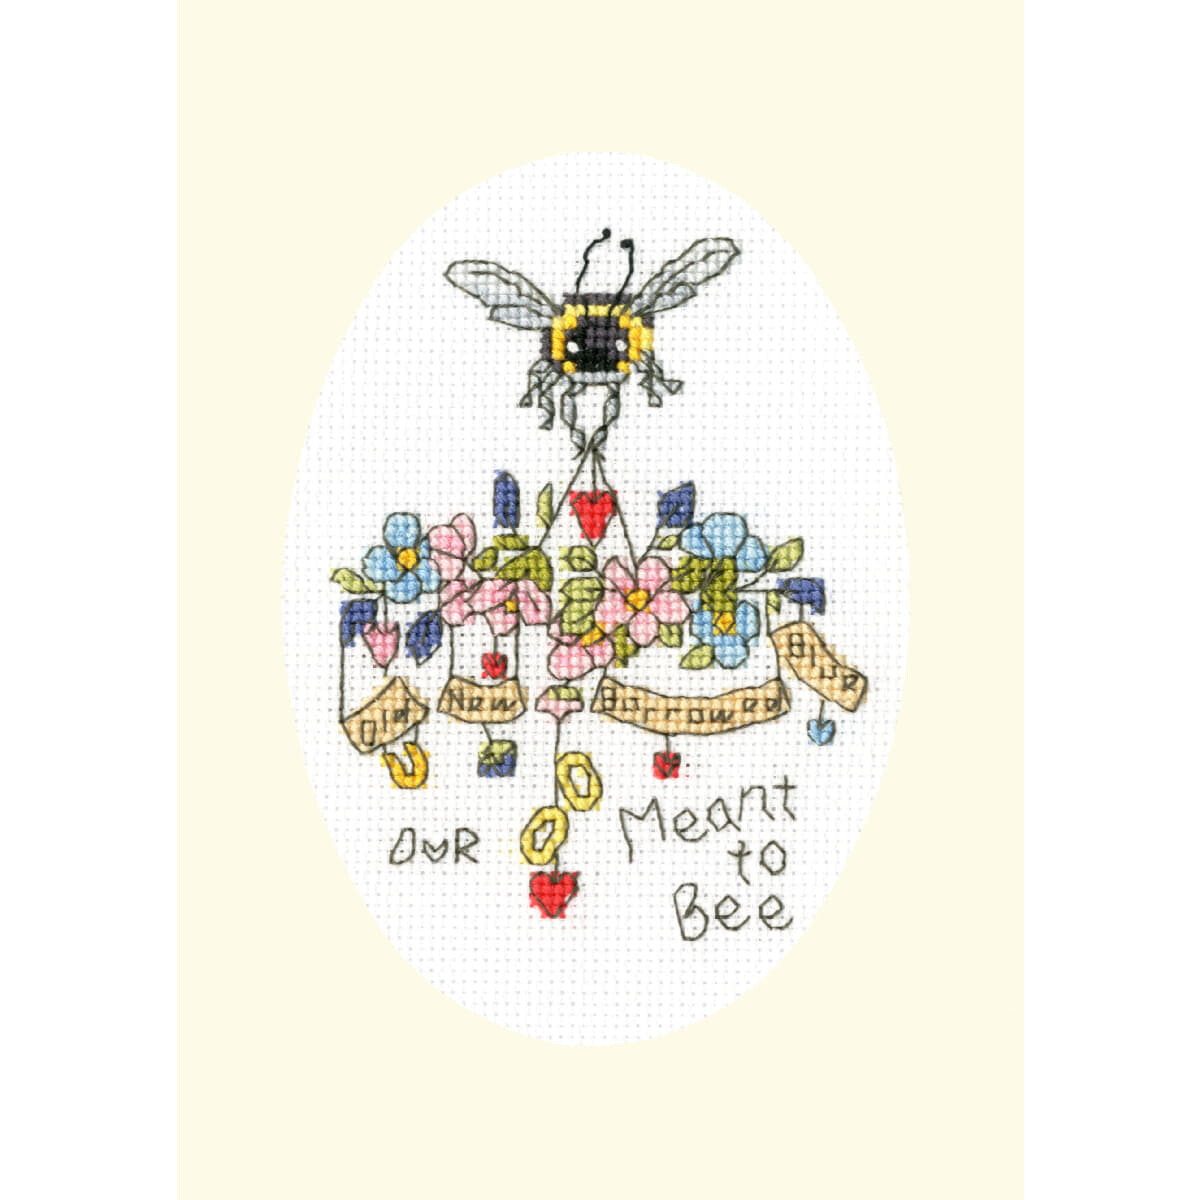 Ein bezauberndes Kreuzstich-Stickbild zeigt eine Biene...